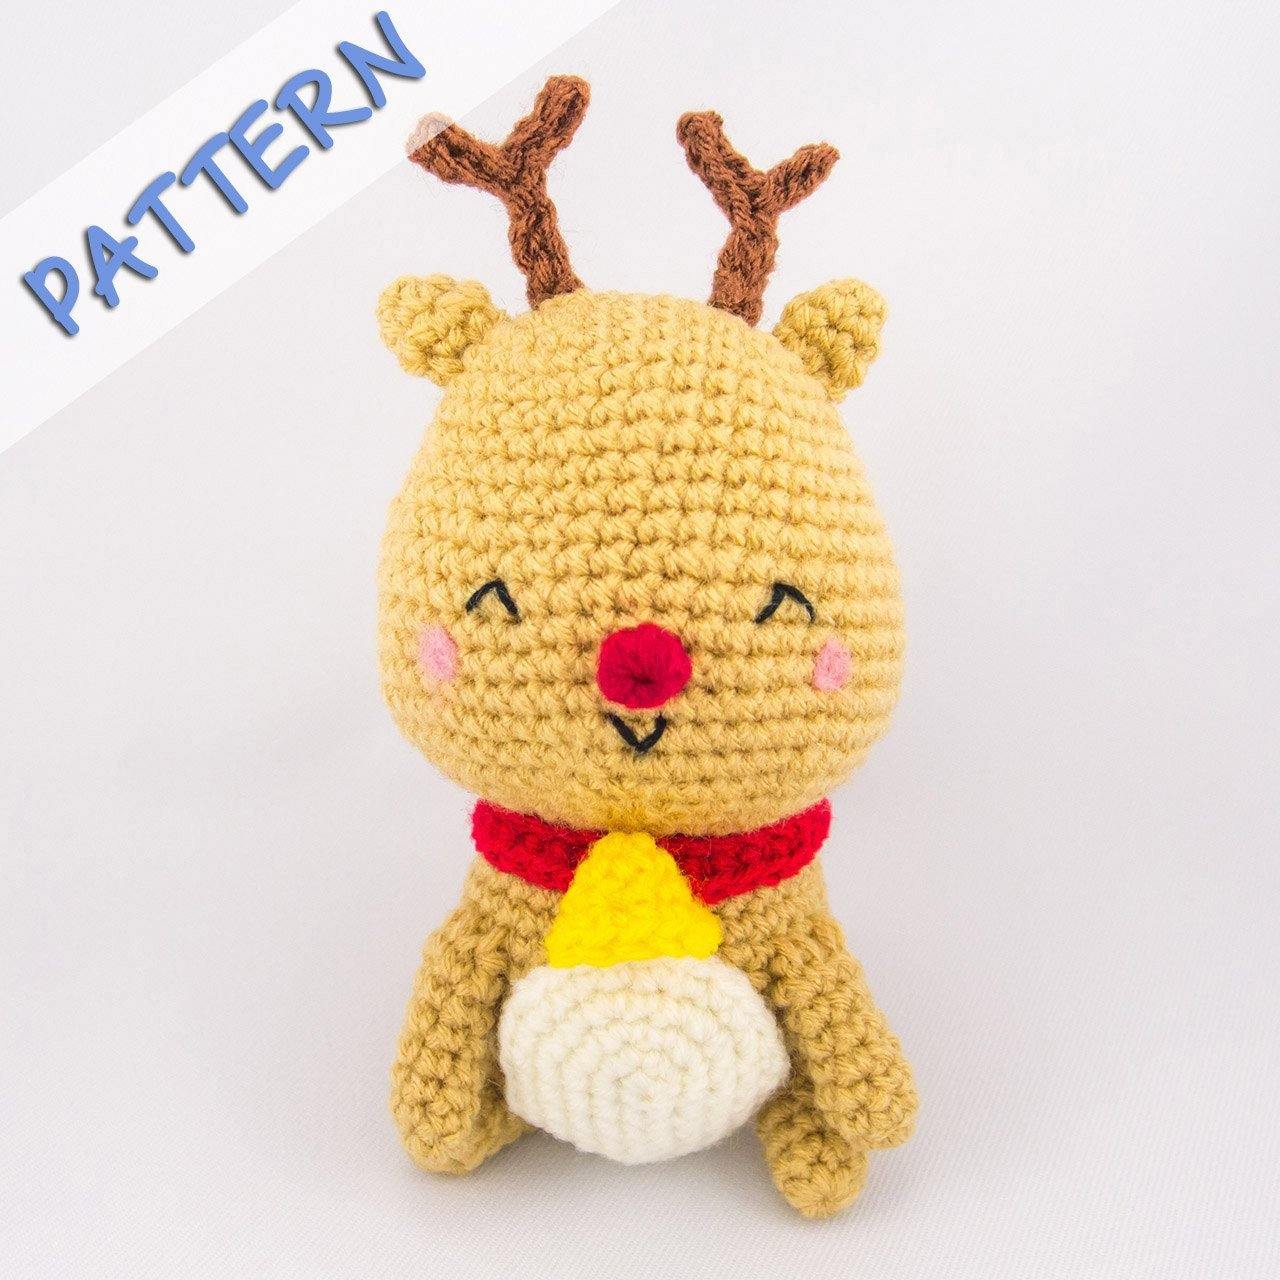 Jingle the Reindeer Crochet Pattern